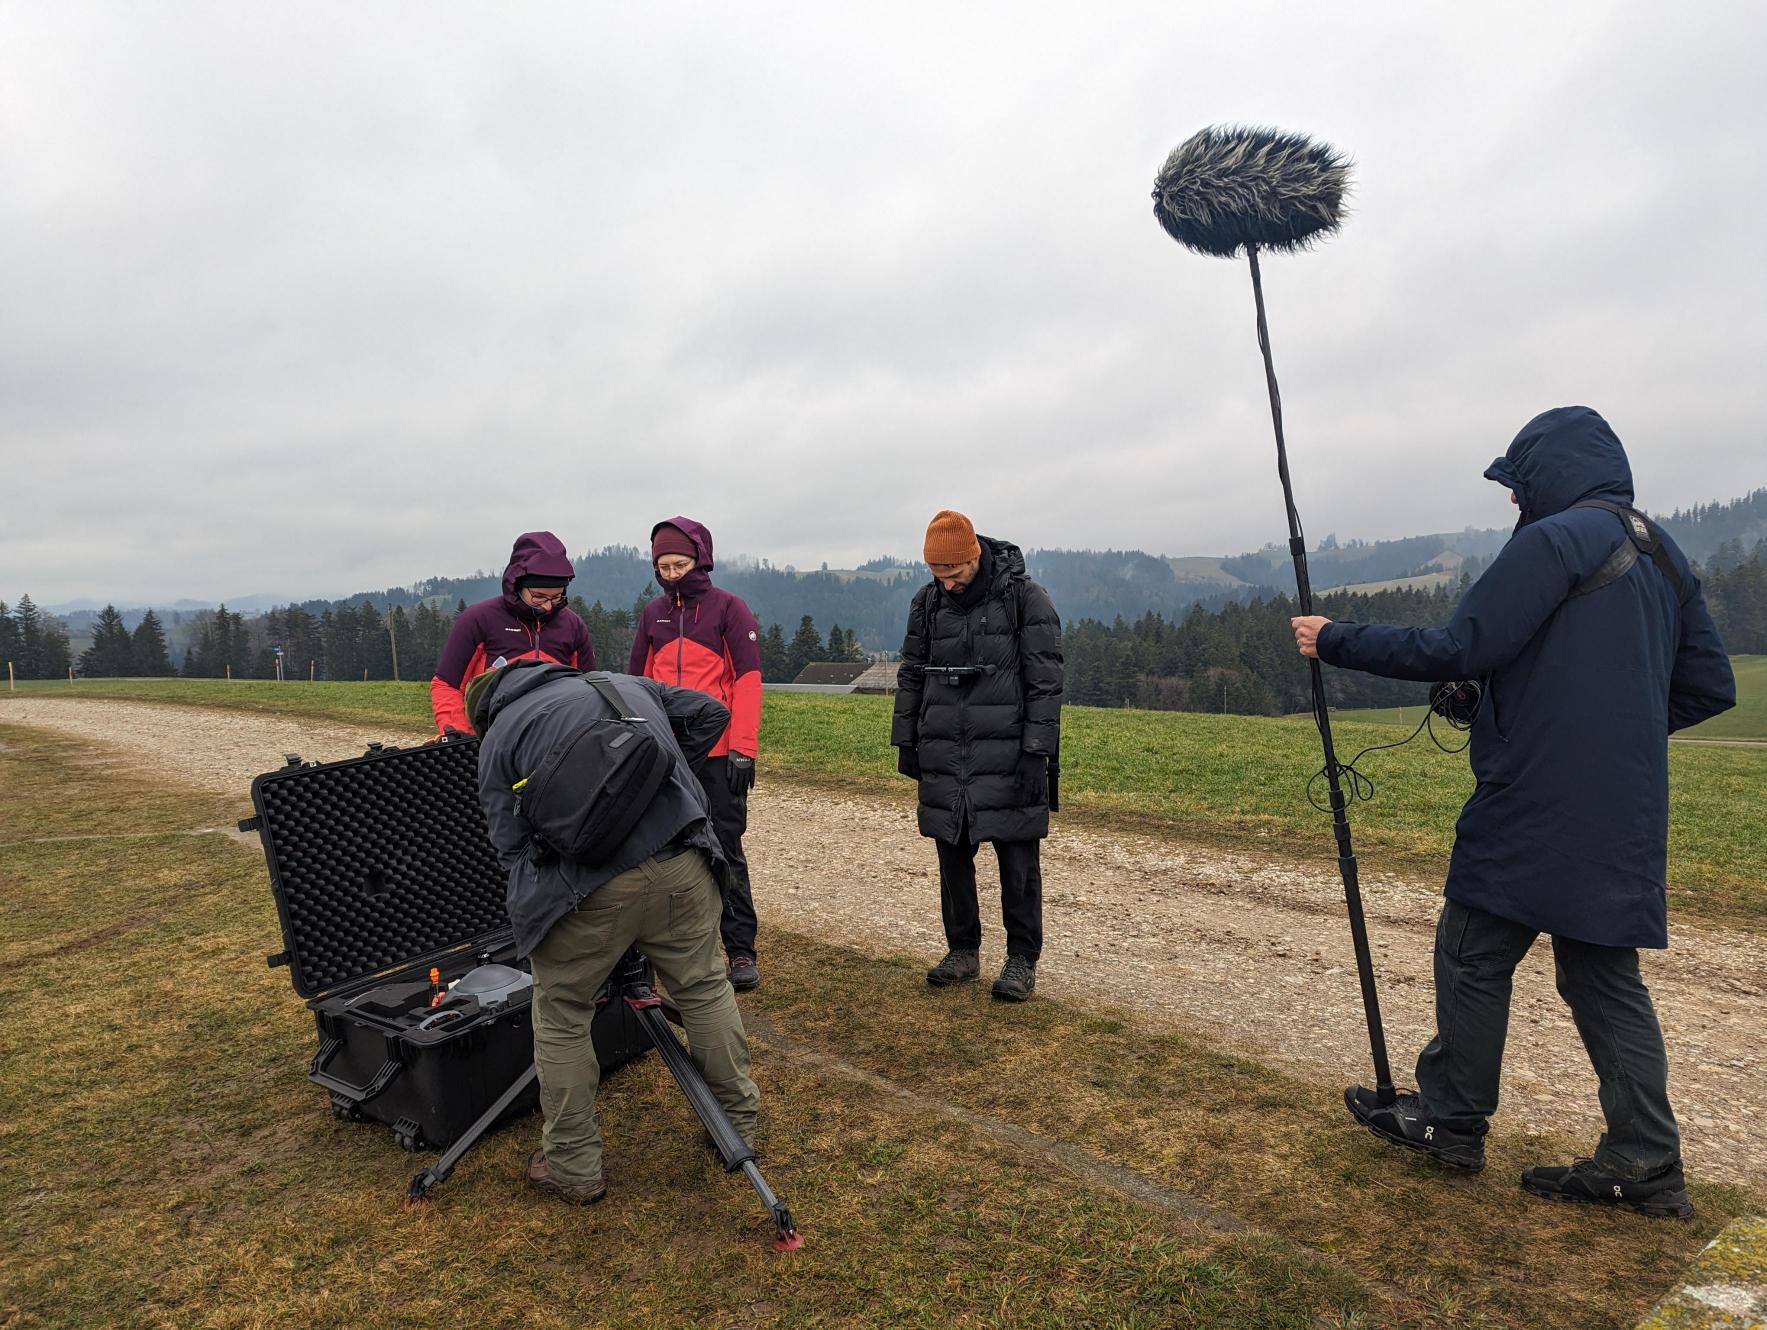 Vergrösserte Ansicht: Gestenr am 27 Februar geben unsere UAV Pilotinnen dem Filmteam einen Eindruck unseres Experiments.